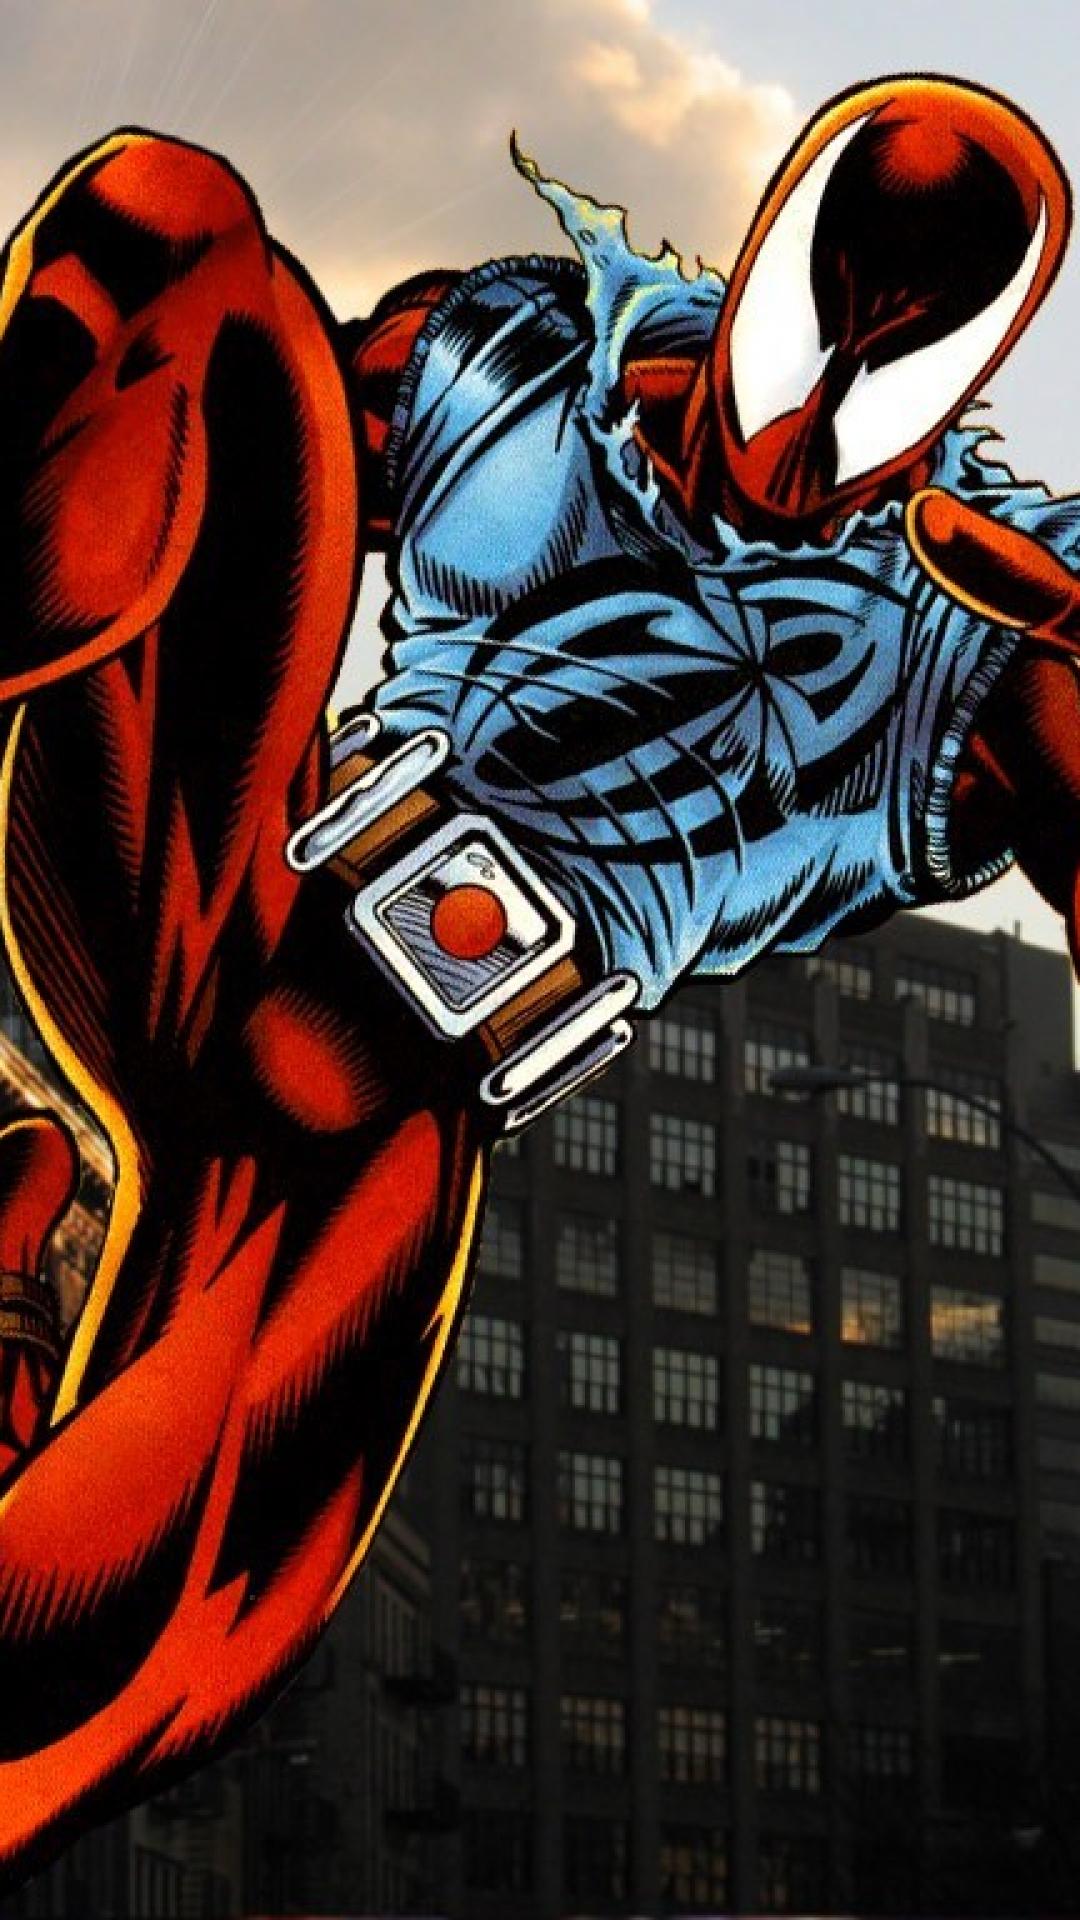 緋色のクモの壁紙,架空の人物,スーパーヒーロー,フィクション,漫画,ヒーロー